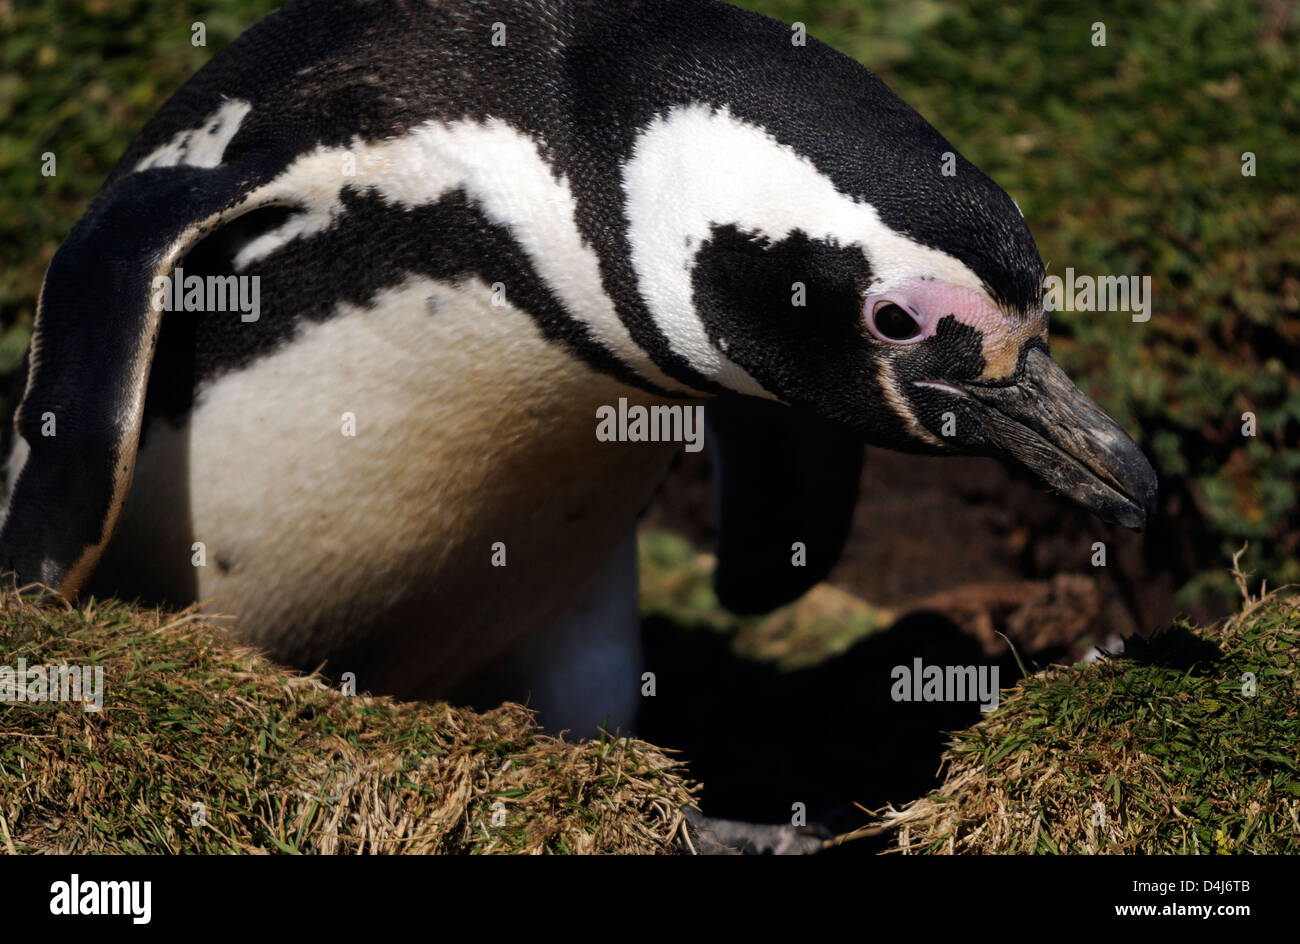 Portrait of a Magellanic Penguin (Spheniscus magellanicus)  at the nesting colony at Otway Sound. Punta Arenas, Stock Photo